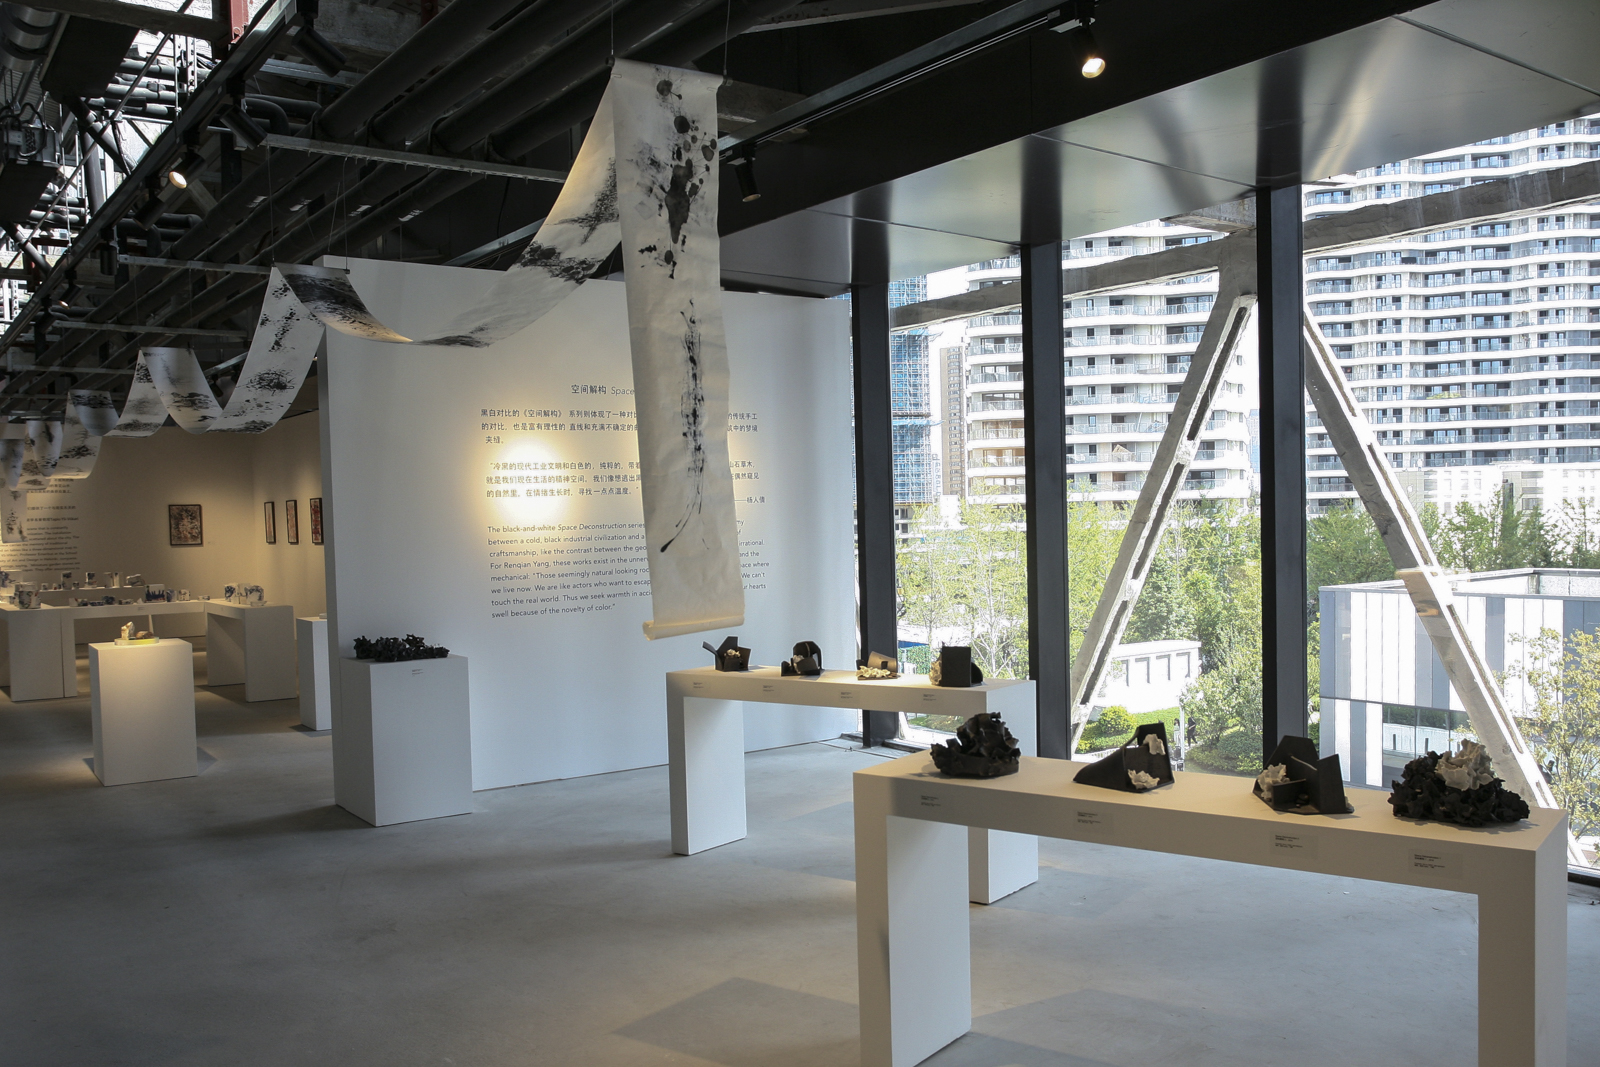   Renqian Yang: Urban Microcosmos  installation view. Photograph by Wan Xiao ©Renqian Yang, courtesy Fou Gallery. 